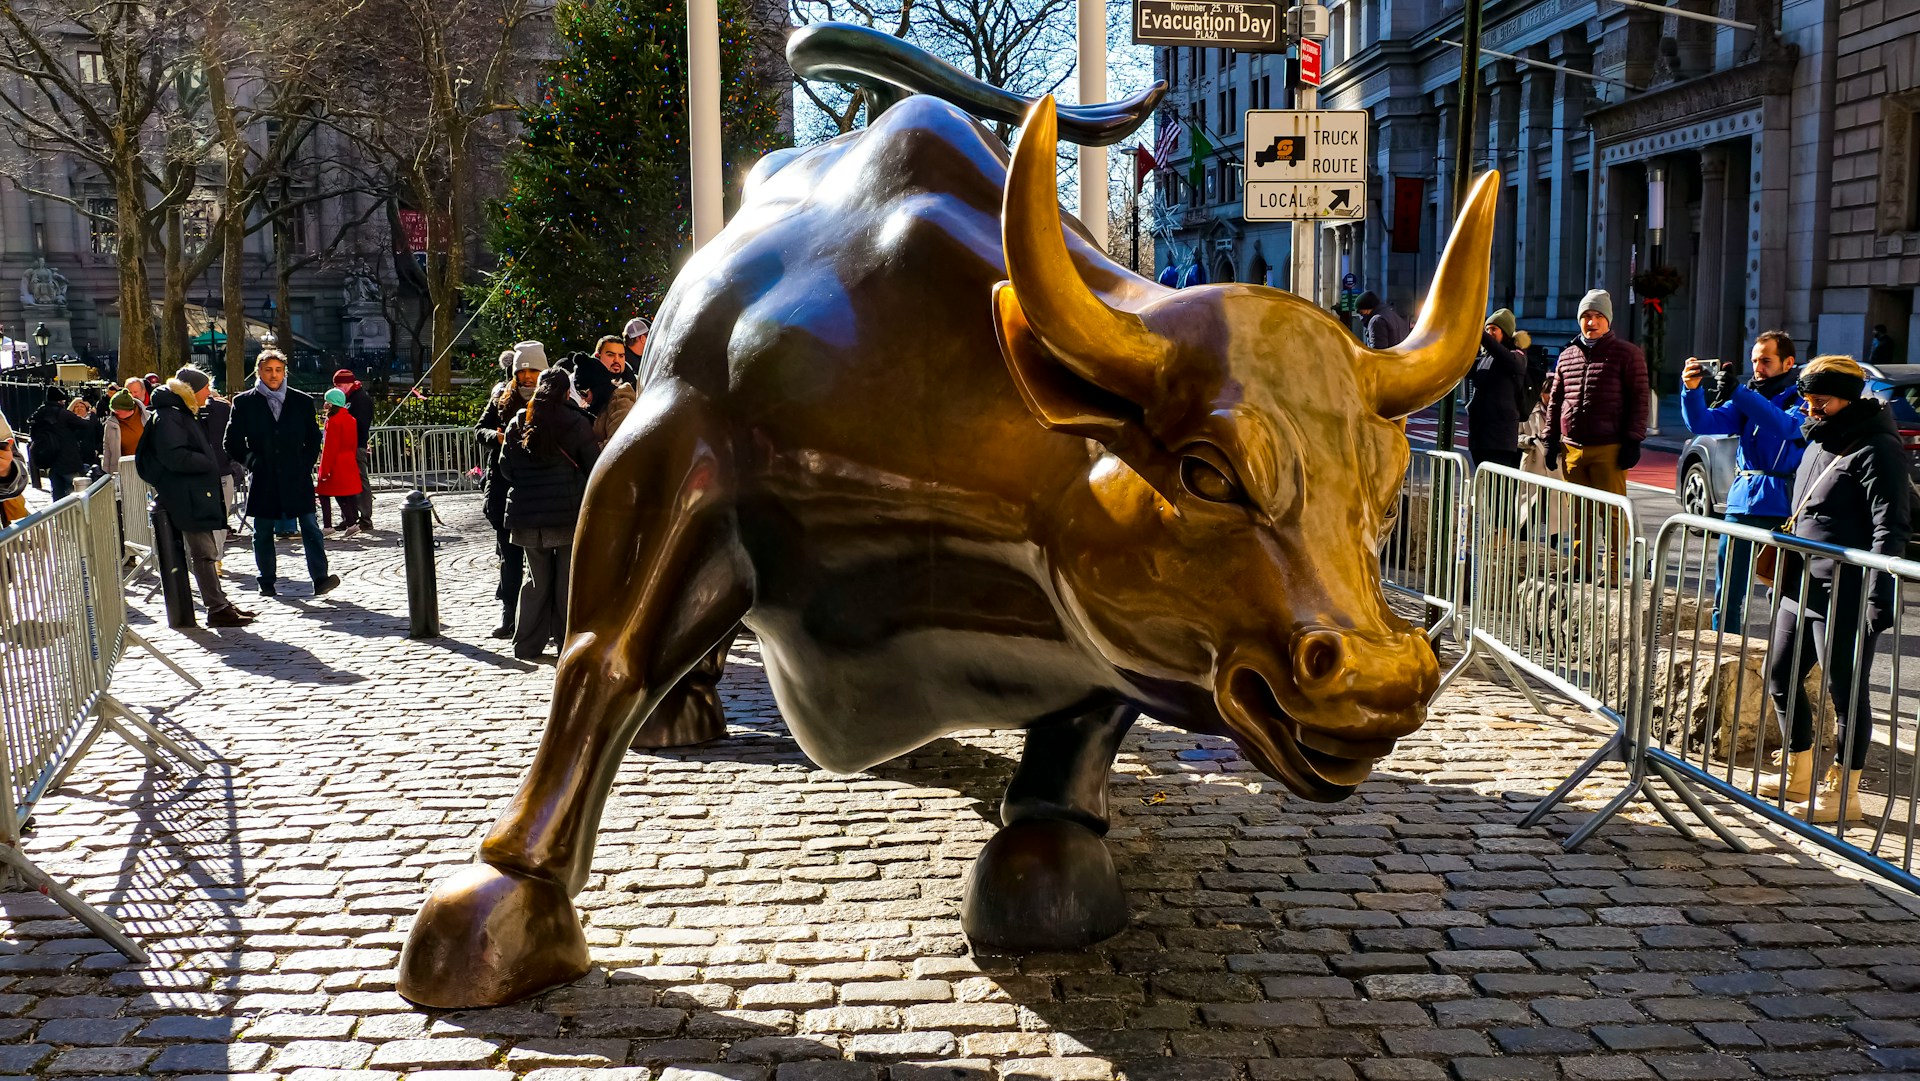 Touro de Wall Street: De acordo com a história, em 1989, o artista italiano Arthuro di Modica levou, ilegalmente, a estátua de bronze do touro para o local onde ele pode ser visto hoje. Esse seria um presente aos nova-iorquinos, como uma forma de representar a força do mercado financeiro da cidade.